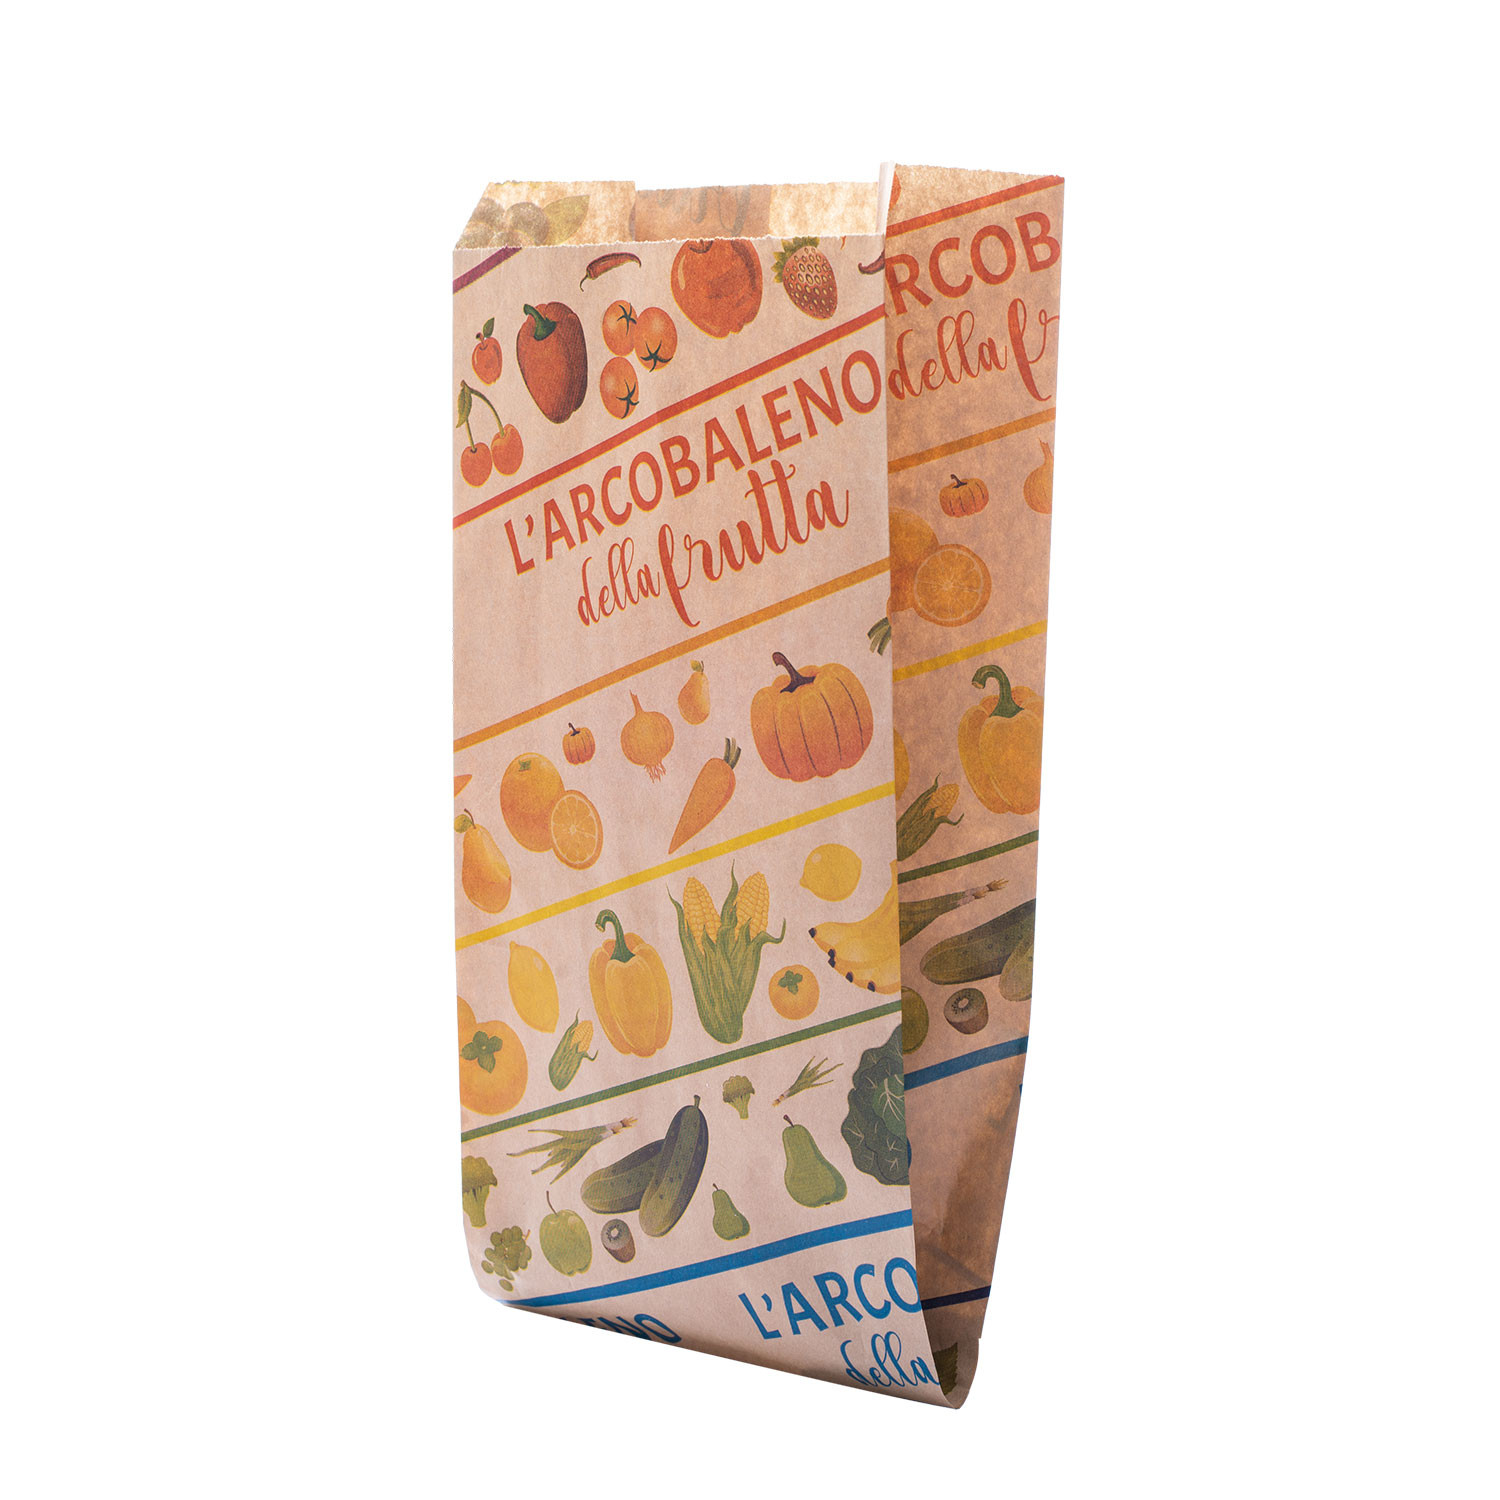 Marrone Sacchetti di carta biodegradabili per frutta dolci e artigianato 20 x 20 cm colore: marrone 8 x 8 verdura UK Store 247 200mm x 200mm 